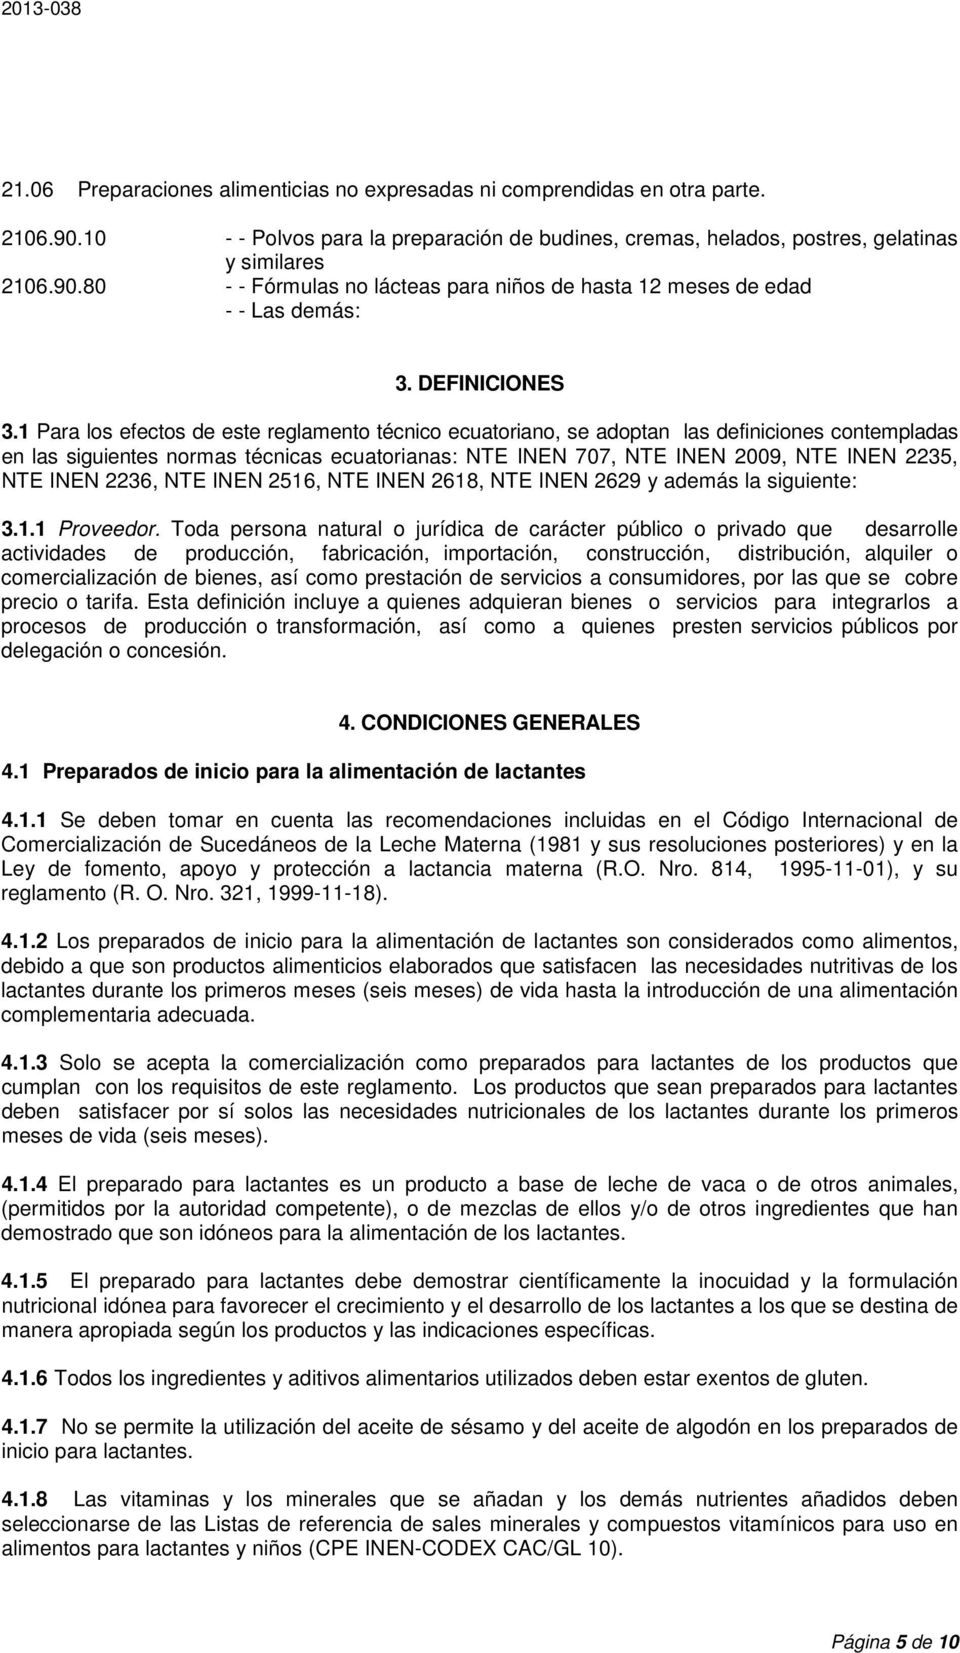 1 Para los efectos de este reglamento técnico ecuatoriano, se adoptan las definiciones contempladas en las siguientes normas técnicas ecuatorianas: NTE INEN 707, NTE INEN 2009, NTE INEN 2235, NTE